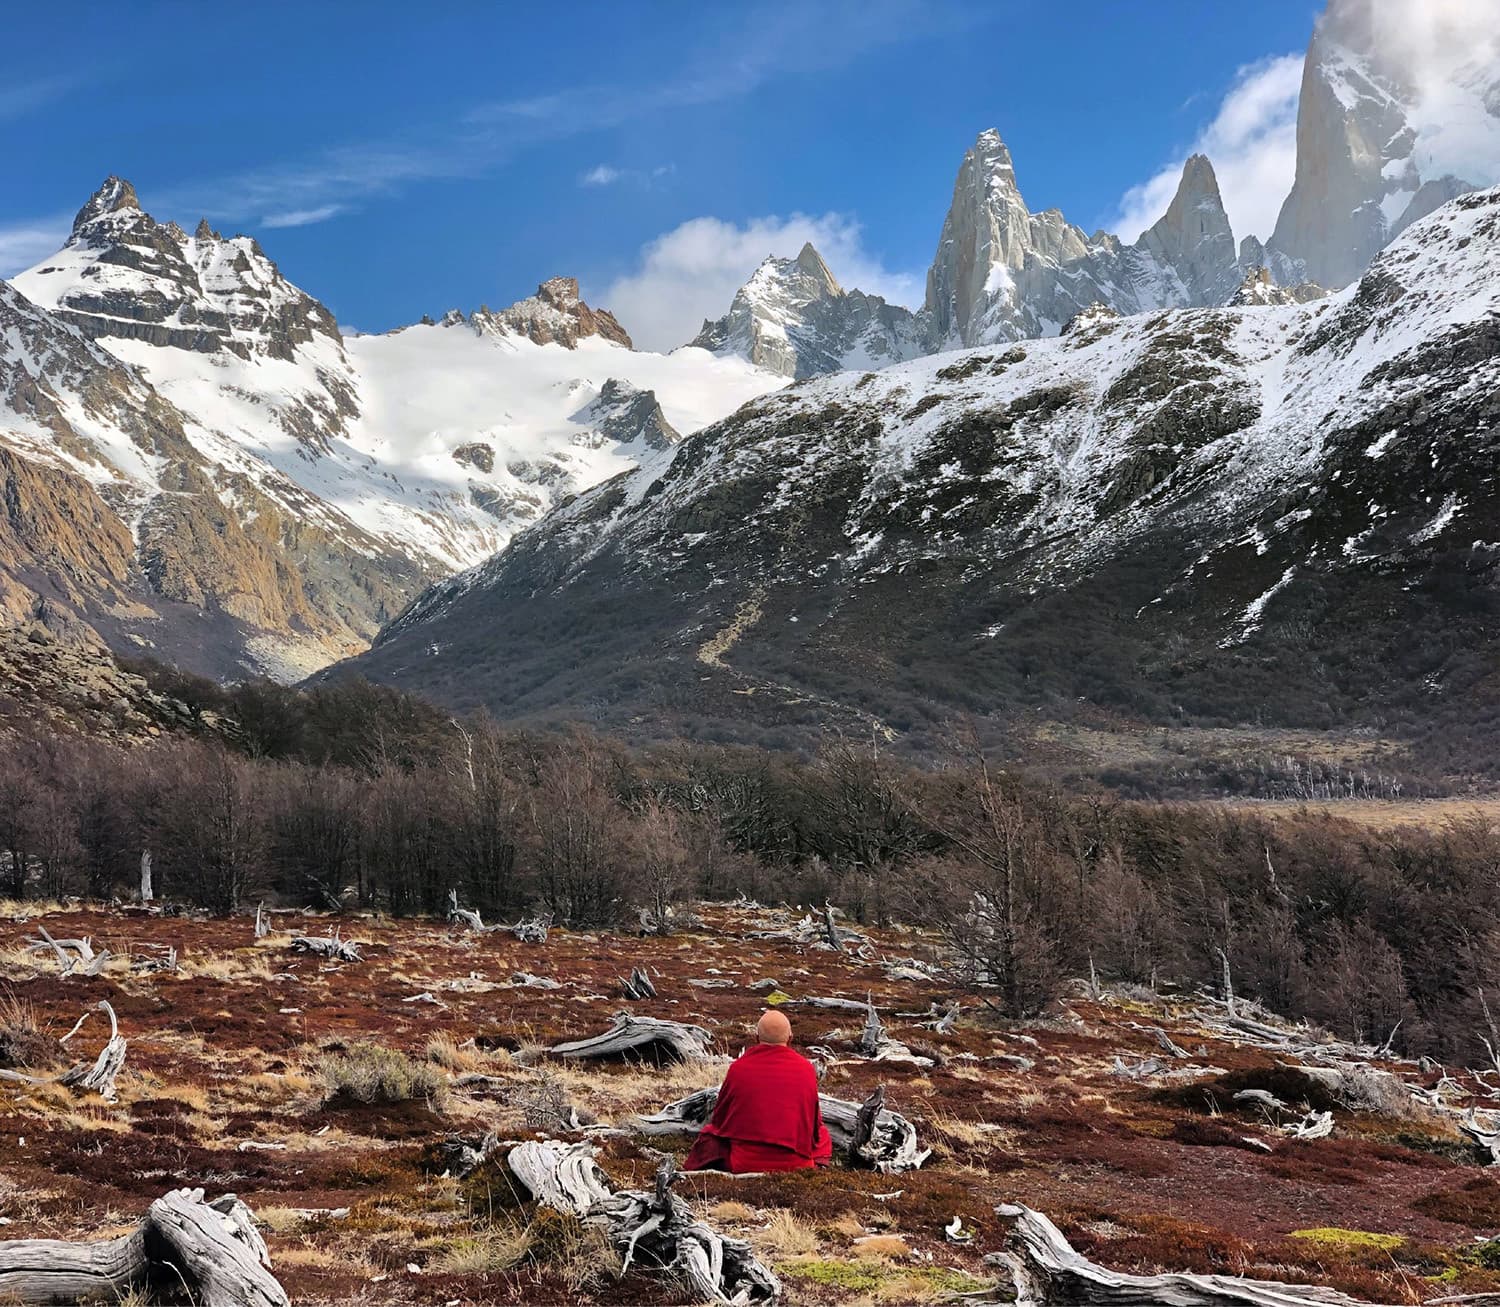 Le Cerro Chaltén en Patagonie (Argentine) Photo Matthieu Ricard